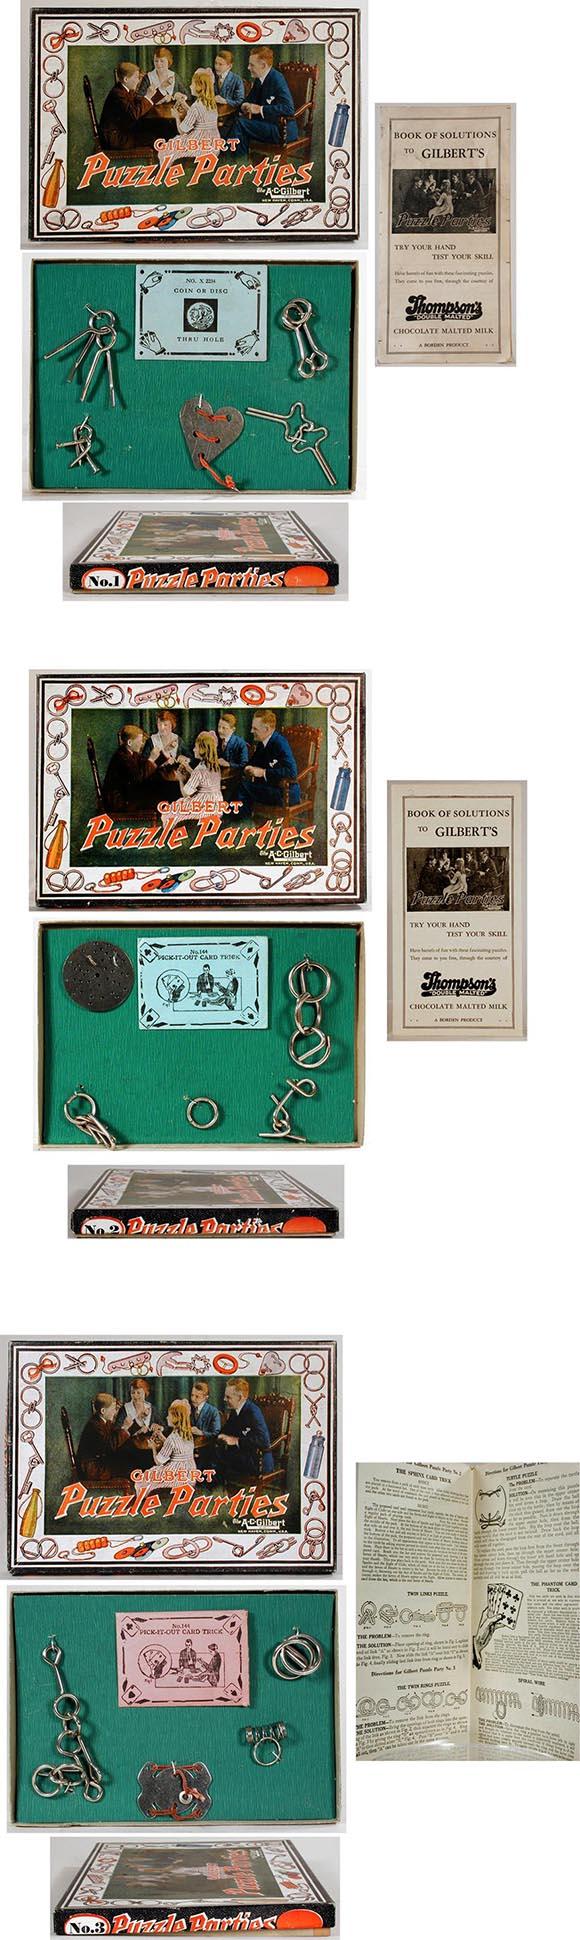 1920 A.C. Gilbert, No.1, No.2 & No.3 Puzzle Parties in Original Boxes